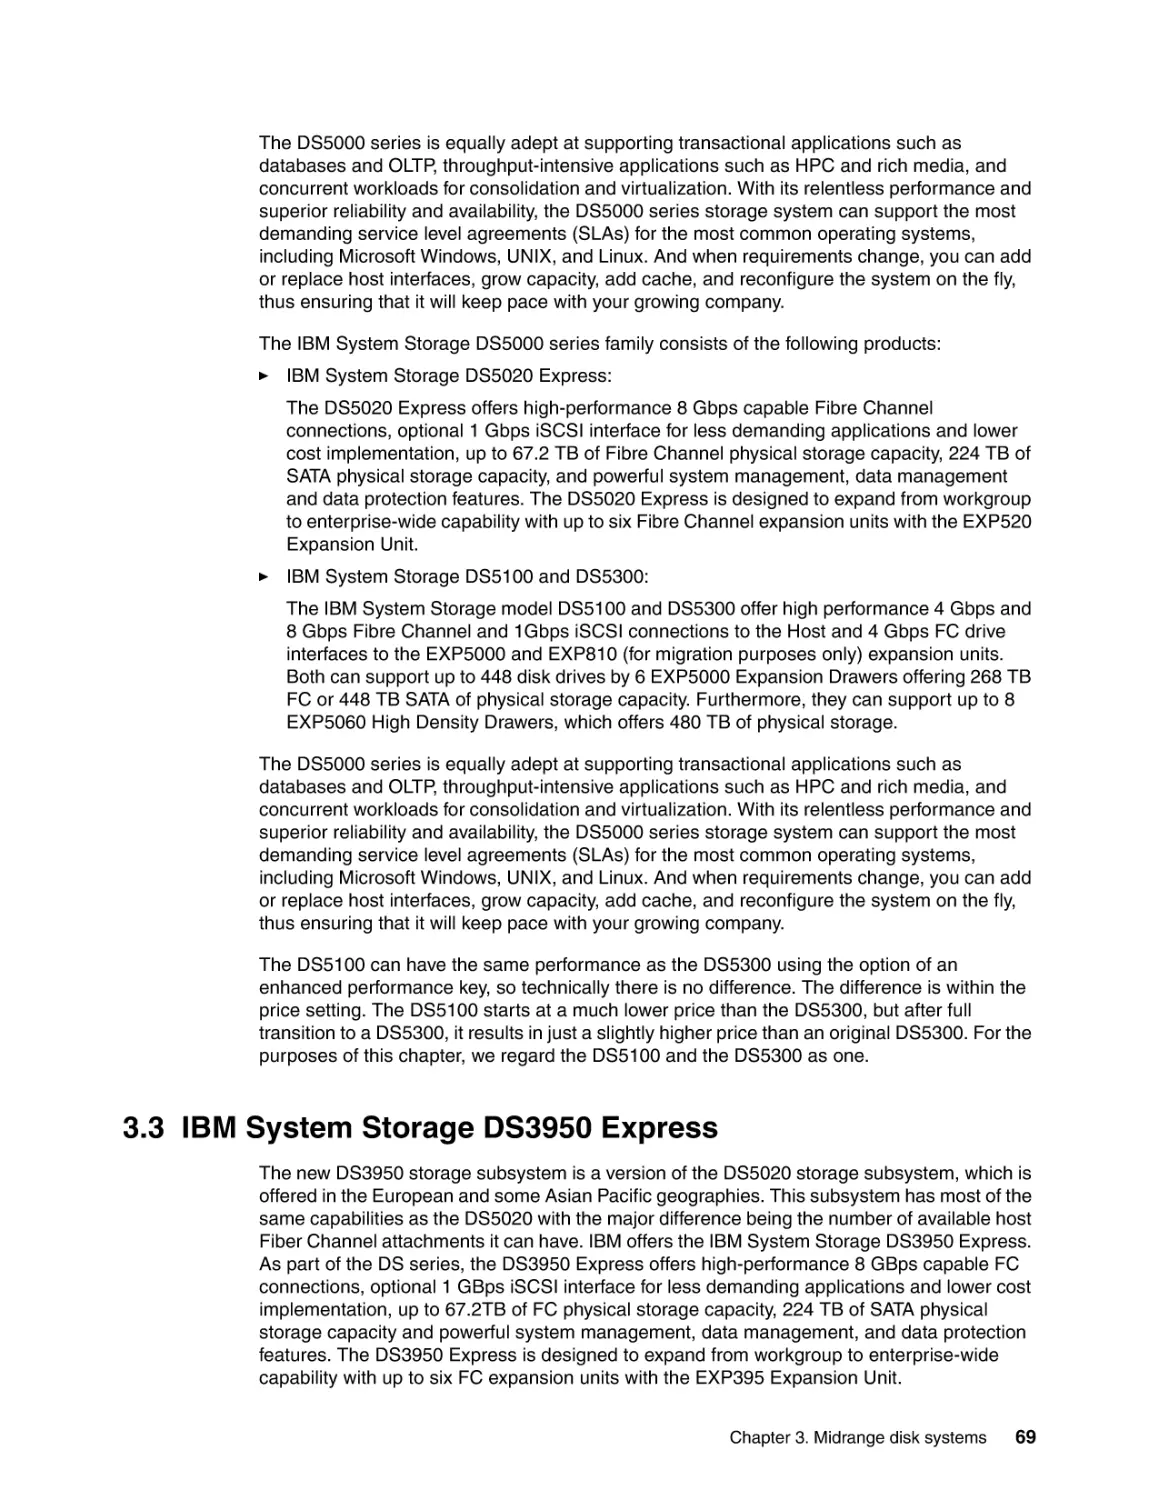 3.3 IBM System Storage DS3950 Express